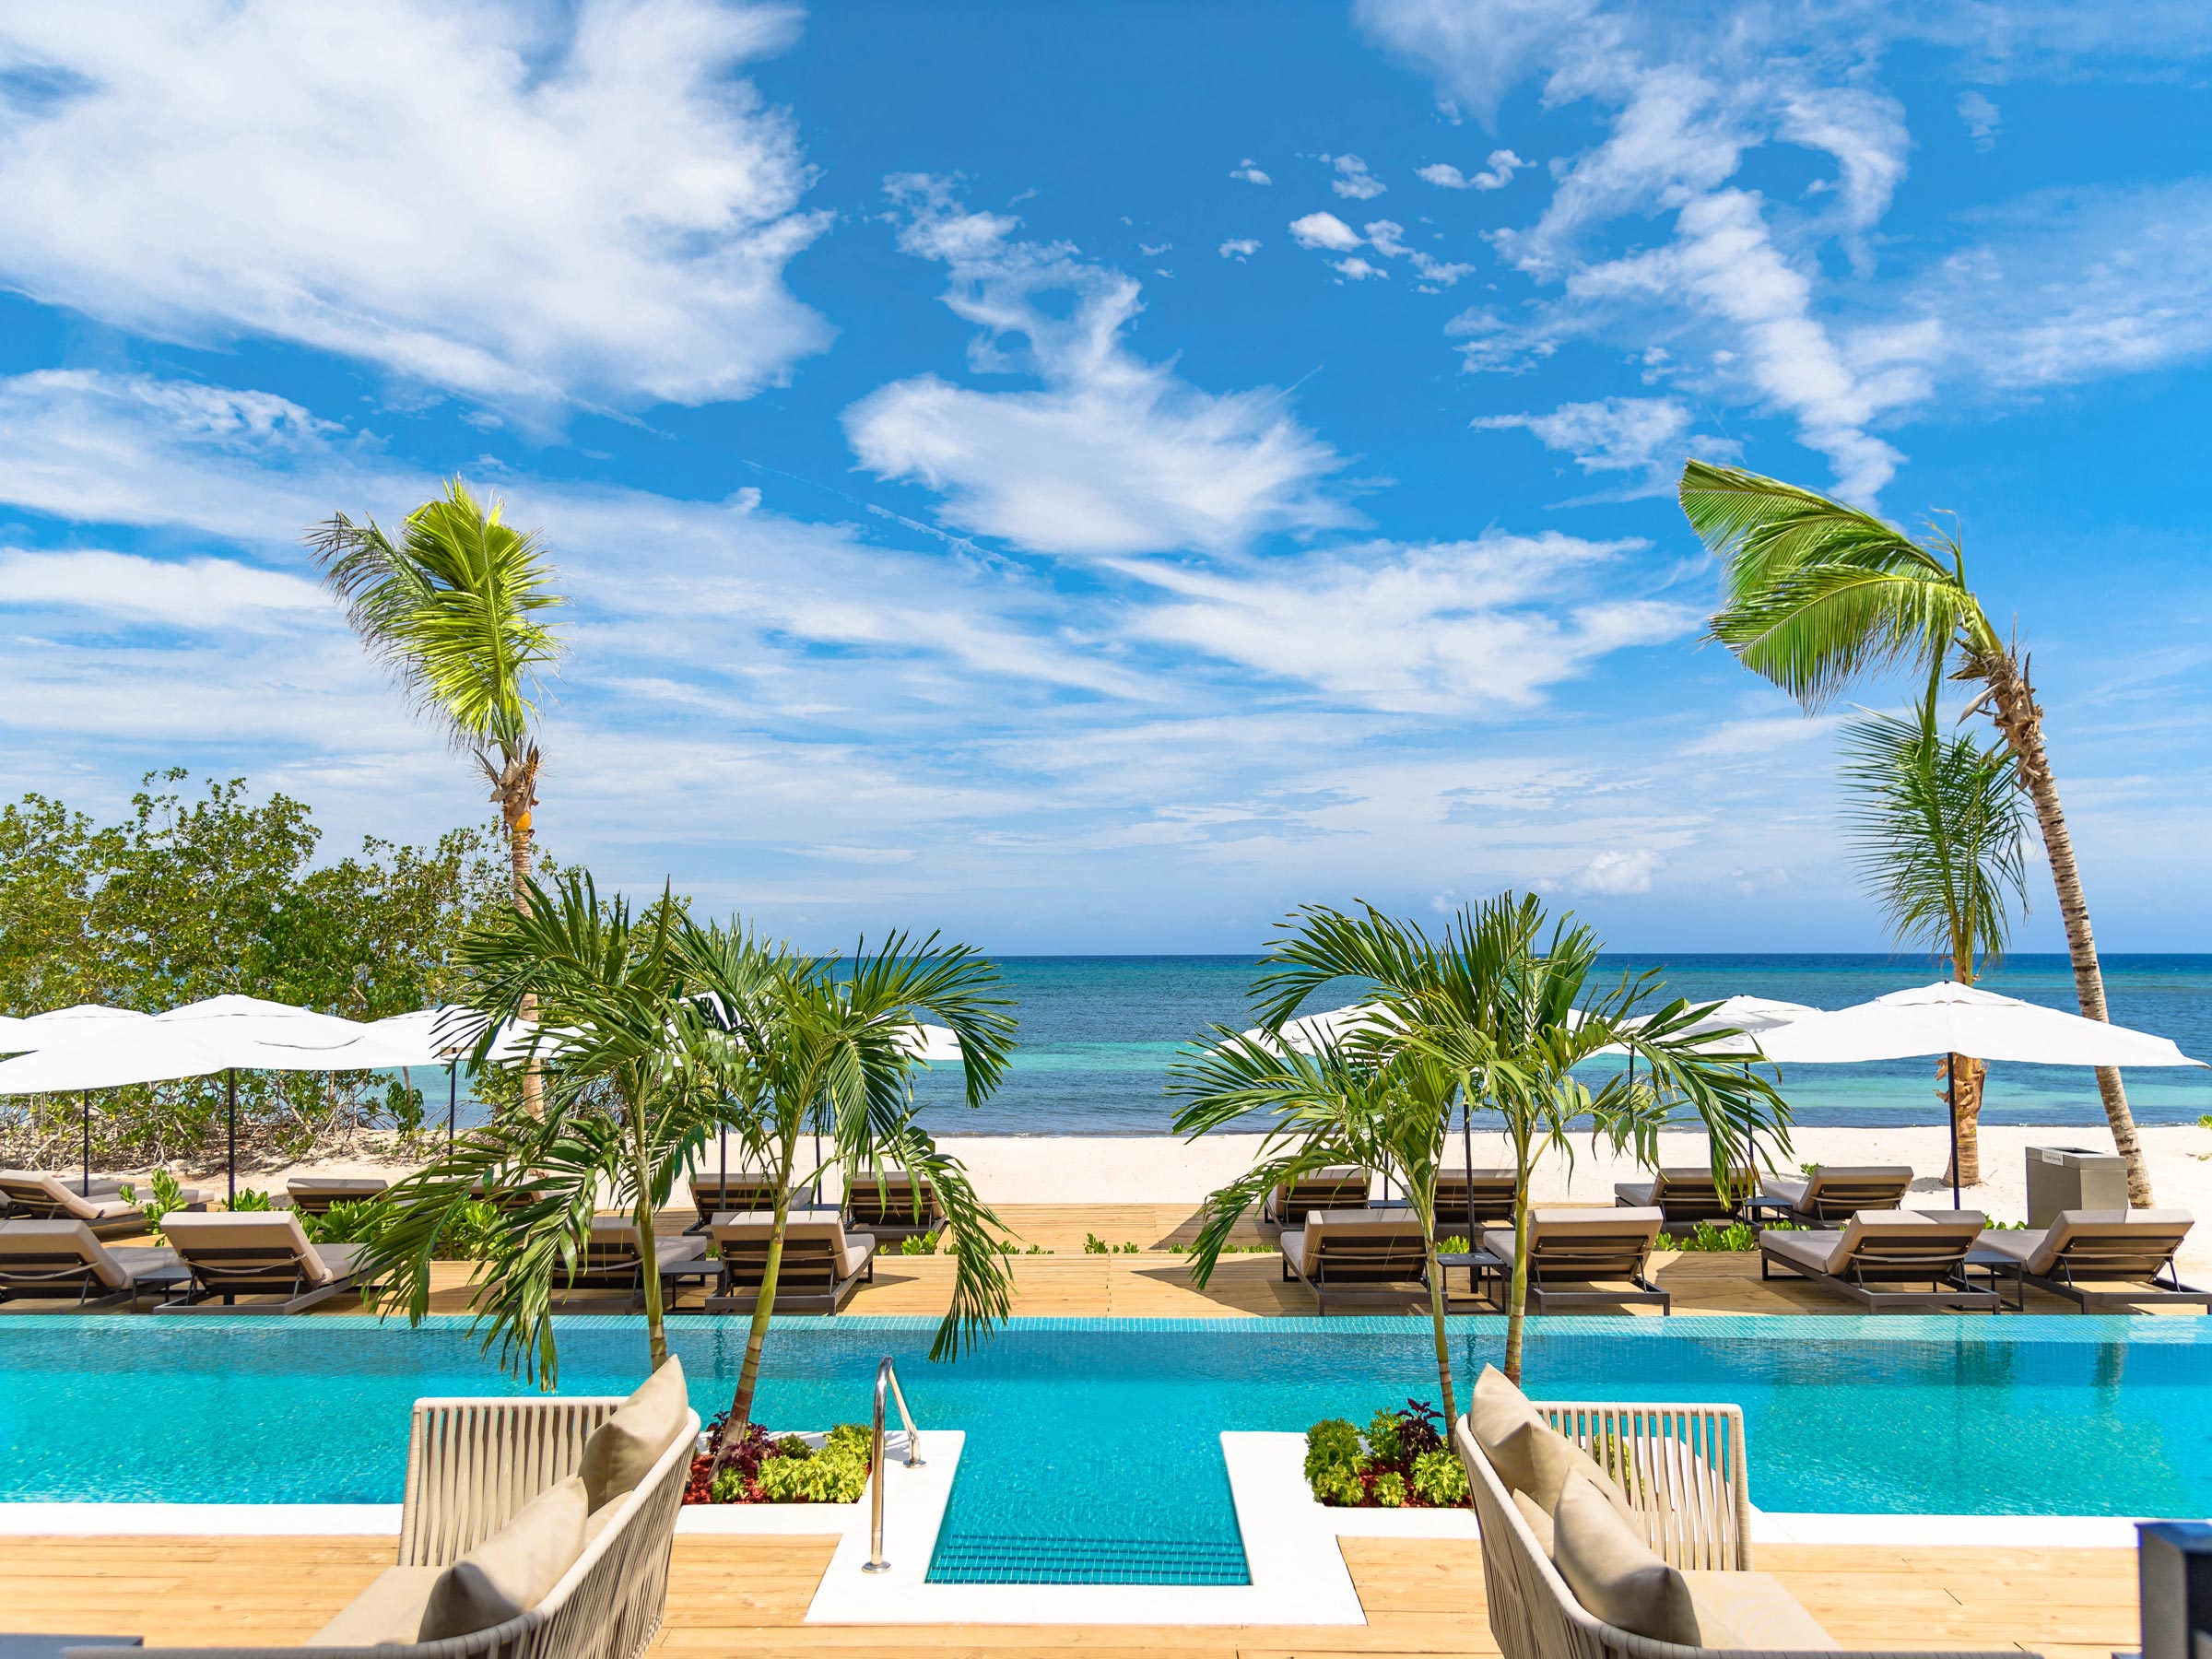 Détendez-vous au bord de la piscine Excellence Club et profitez de la vue sur la plage lorsque vous séjournez dans la suite Excellence Club Suite villa bord de plage avec bassin de plongeon